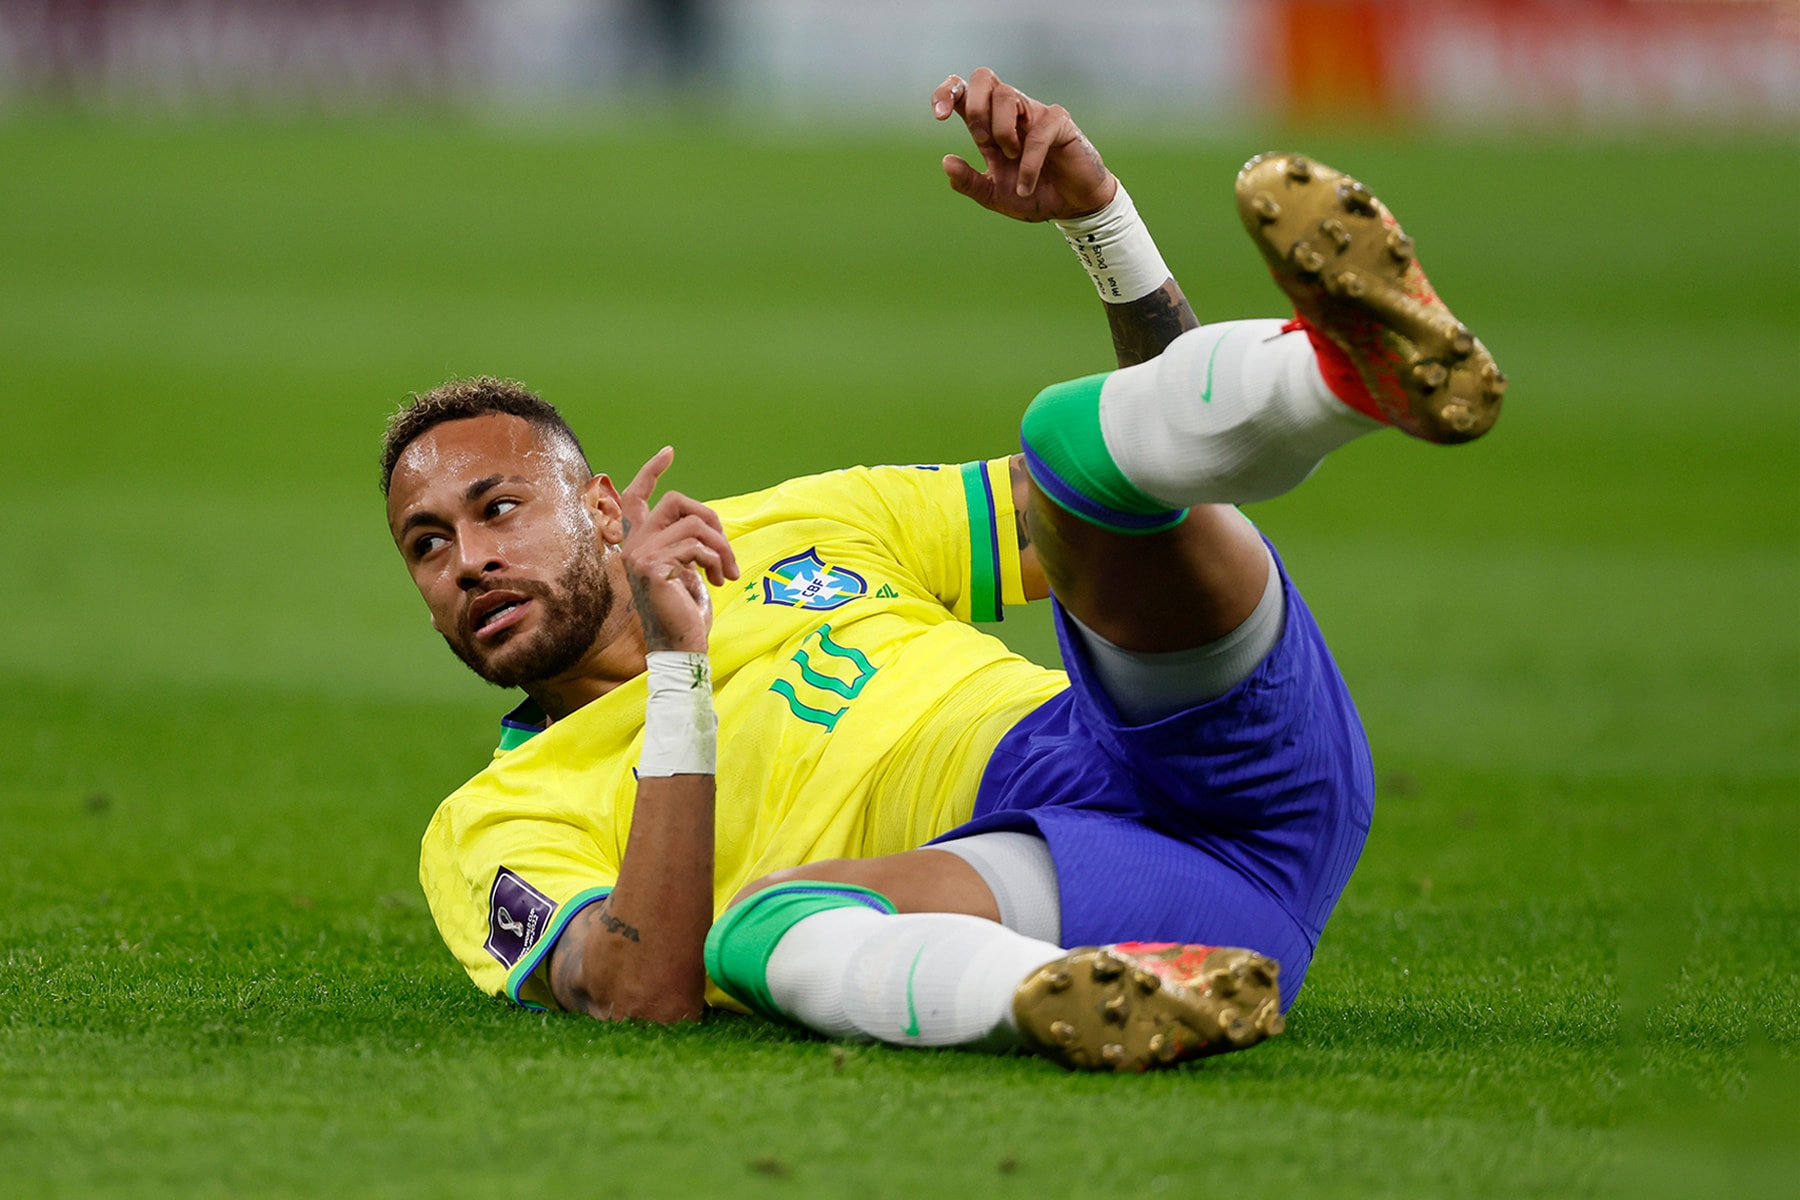 2022 世界盃 – Neymar 腳踝韌帶受傷將缺席剩餘小組賽事